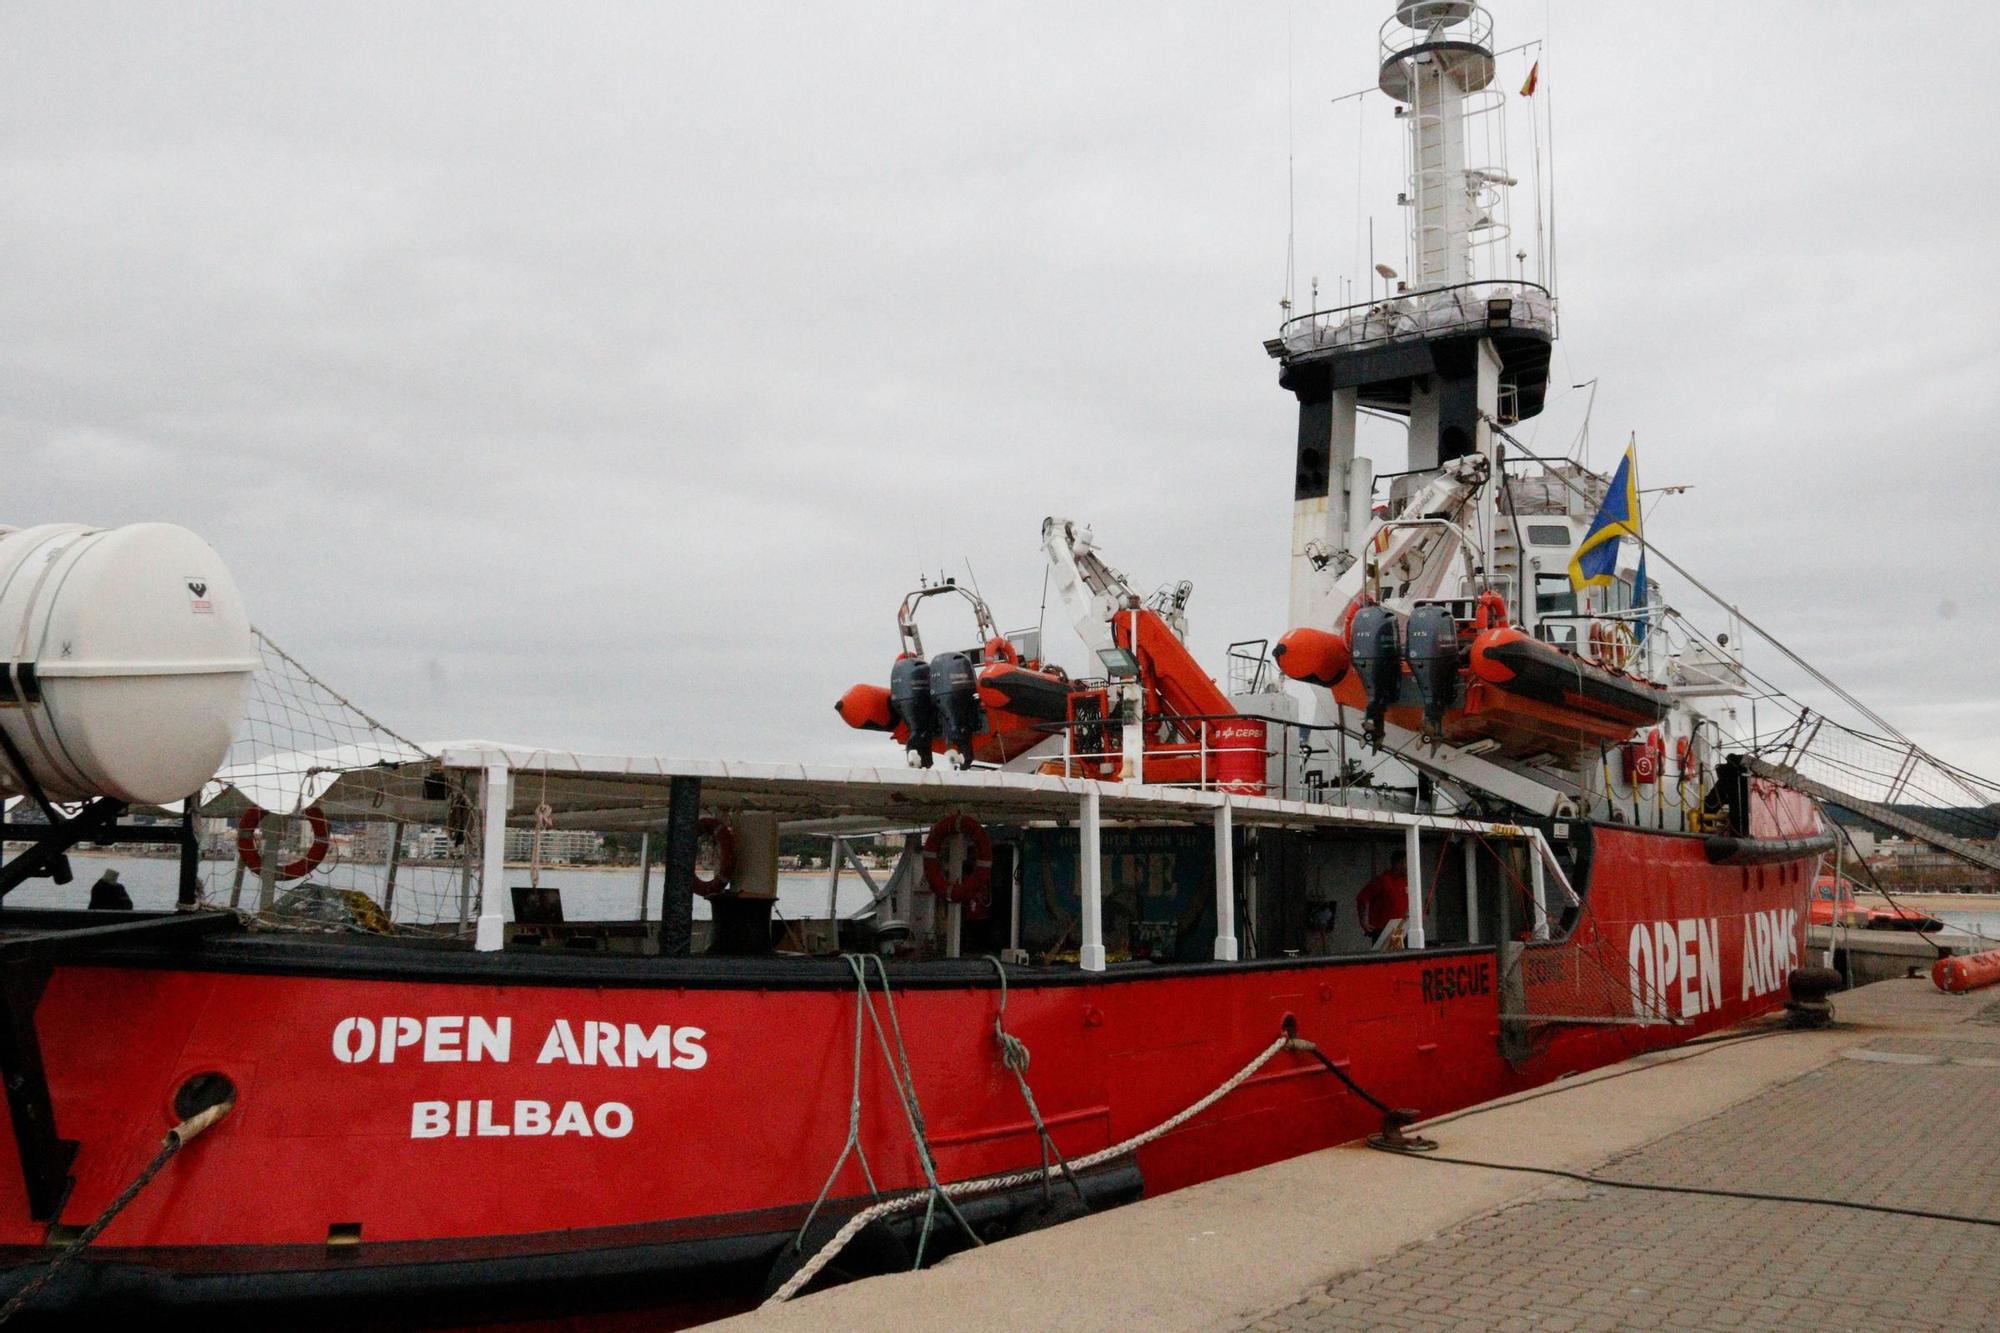 El vaixell d'Open Arms atraca al port de Palamós amb una exposició a bord